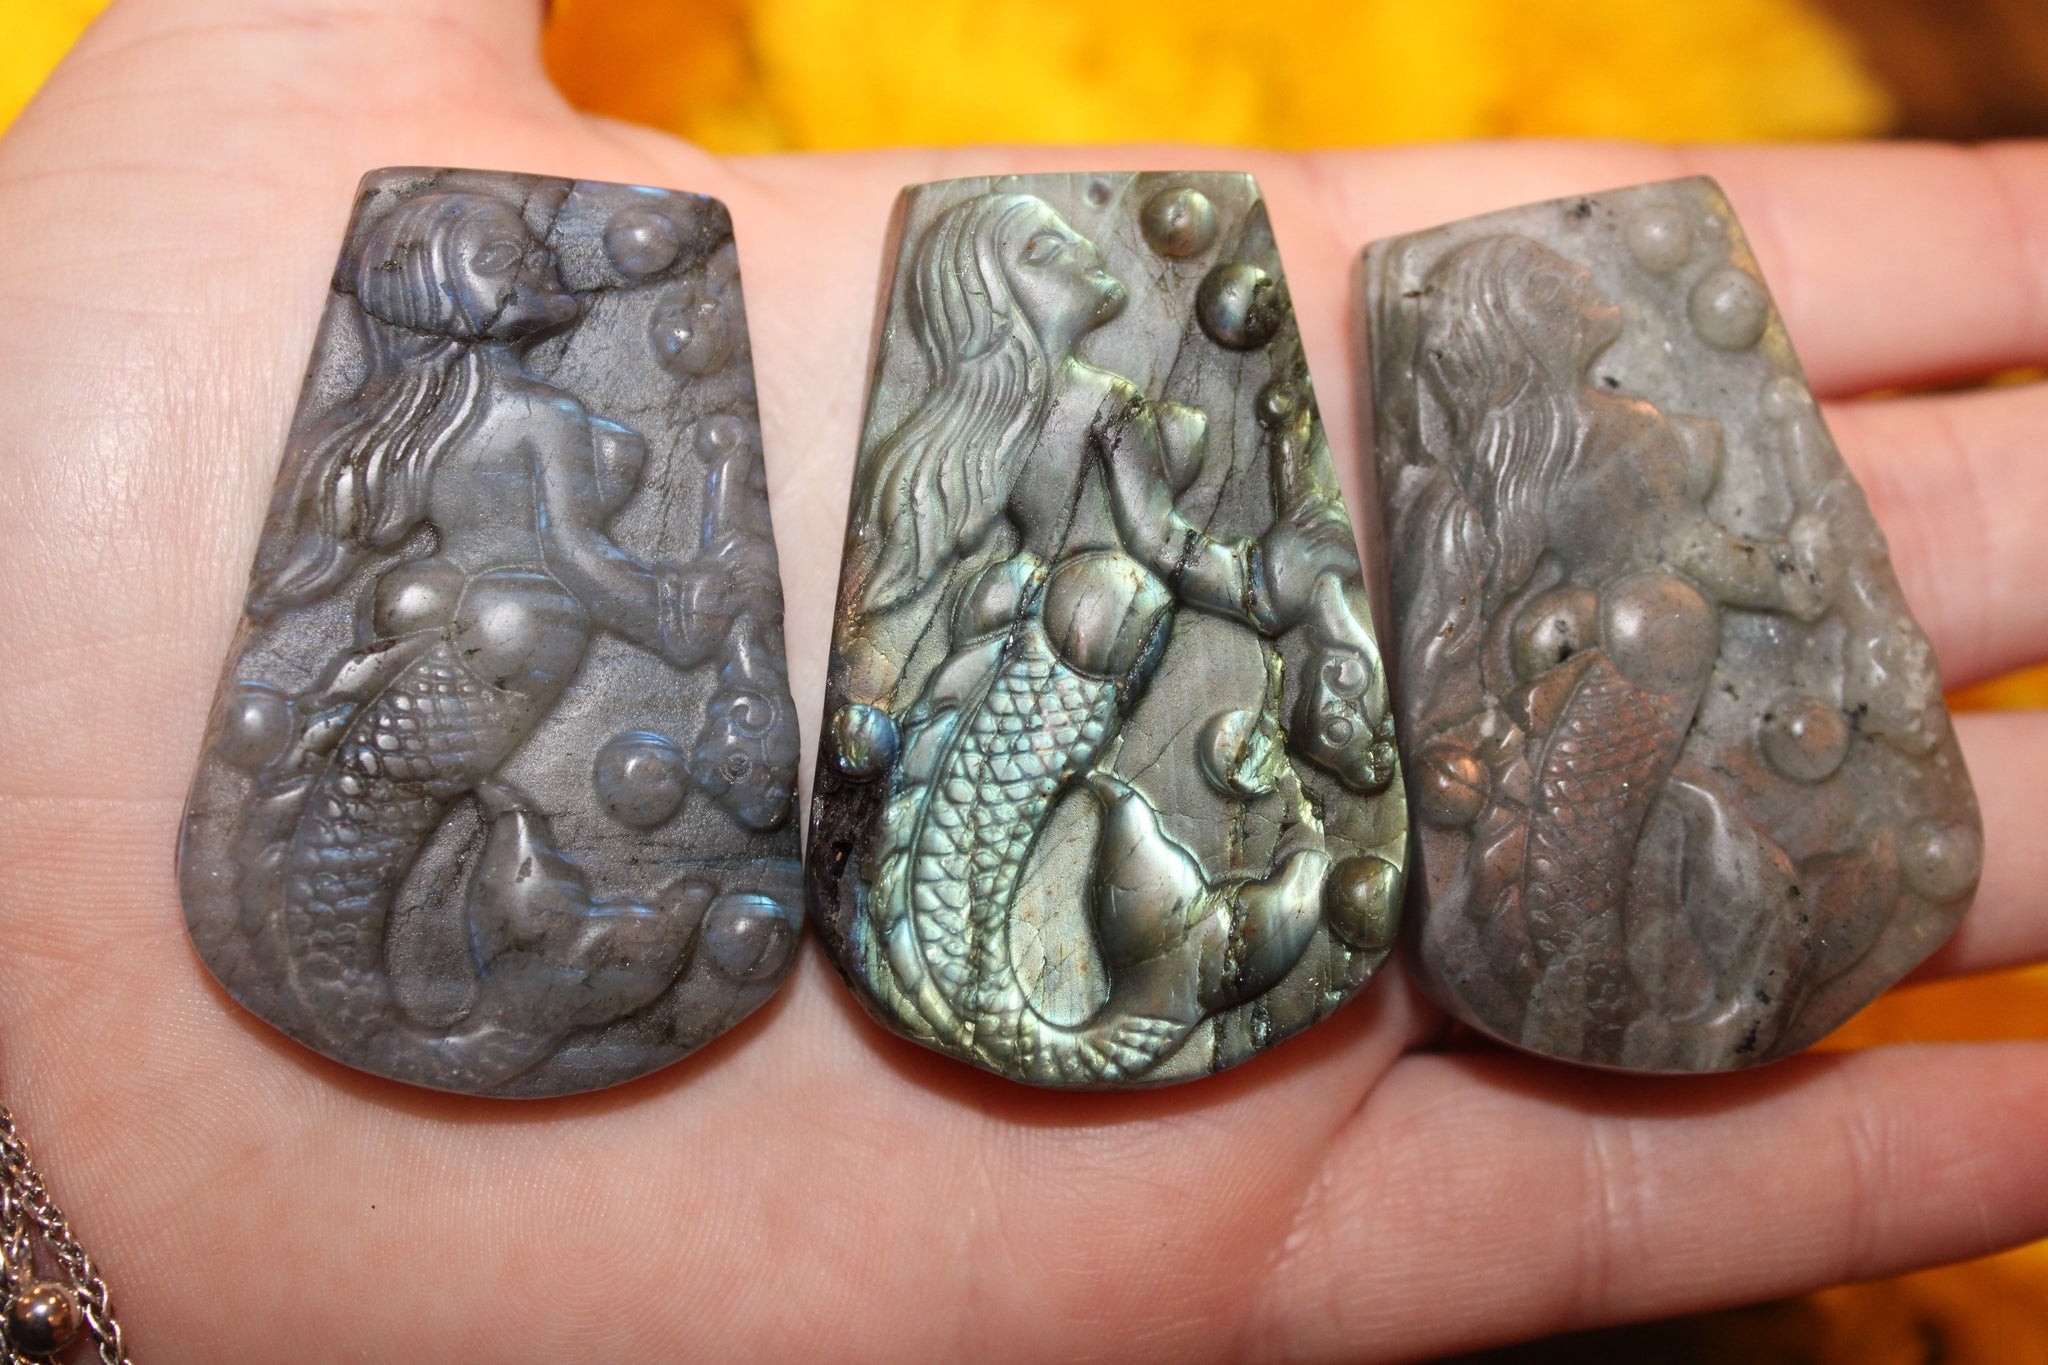 Labradorite Mermaid Carving|Mermaid Carving|Crystal Carving|Mermaid Crystal Carving|Crystal Mermaid|Labradorite Mermaid|Labradorite Carving